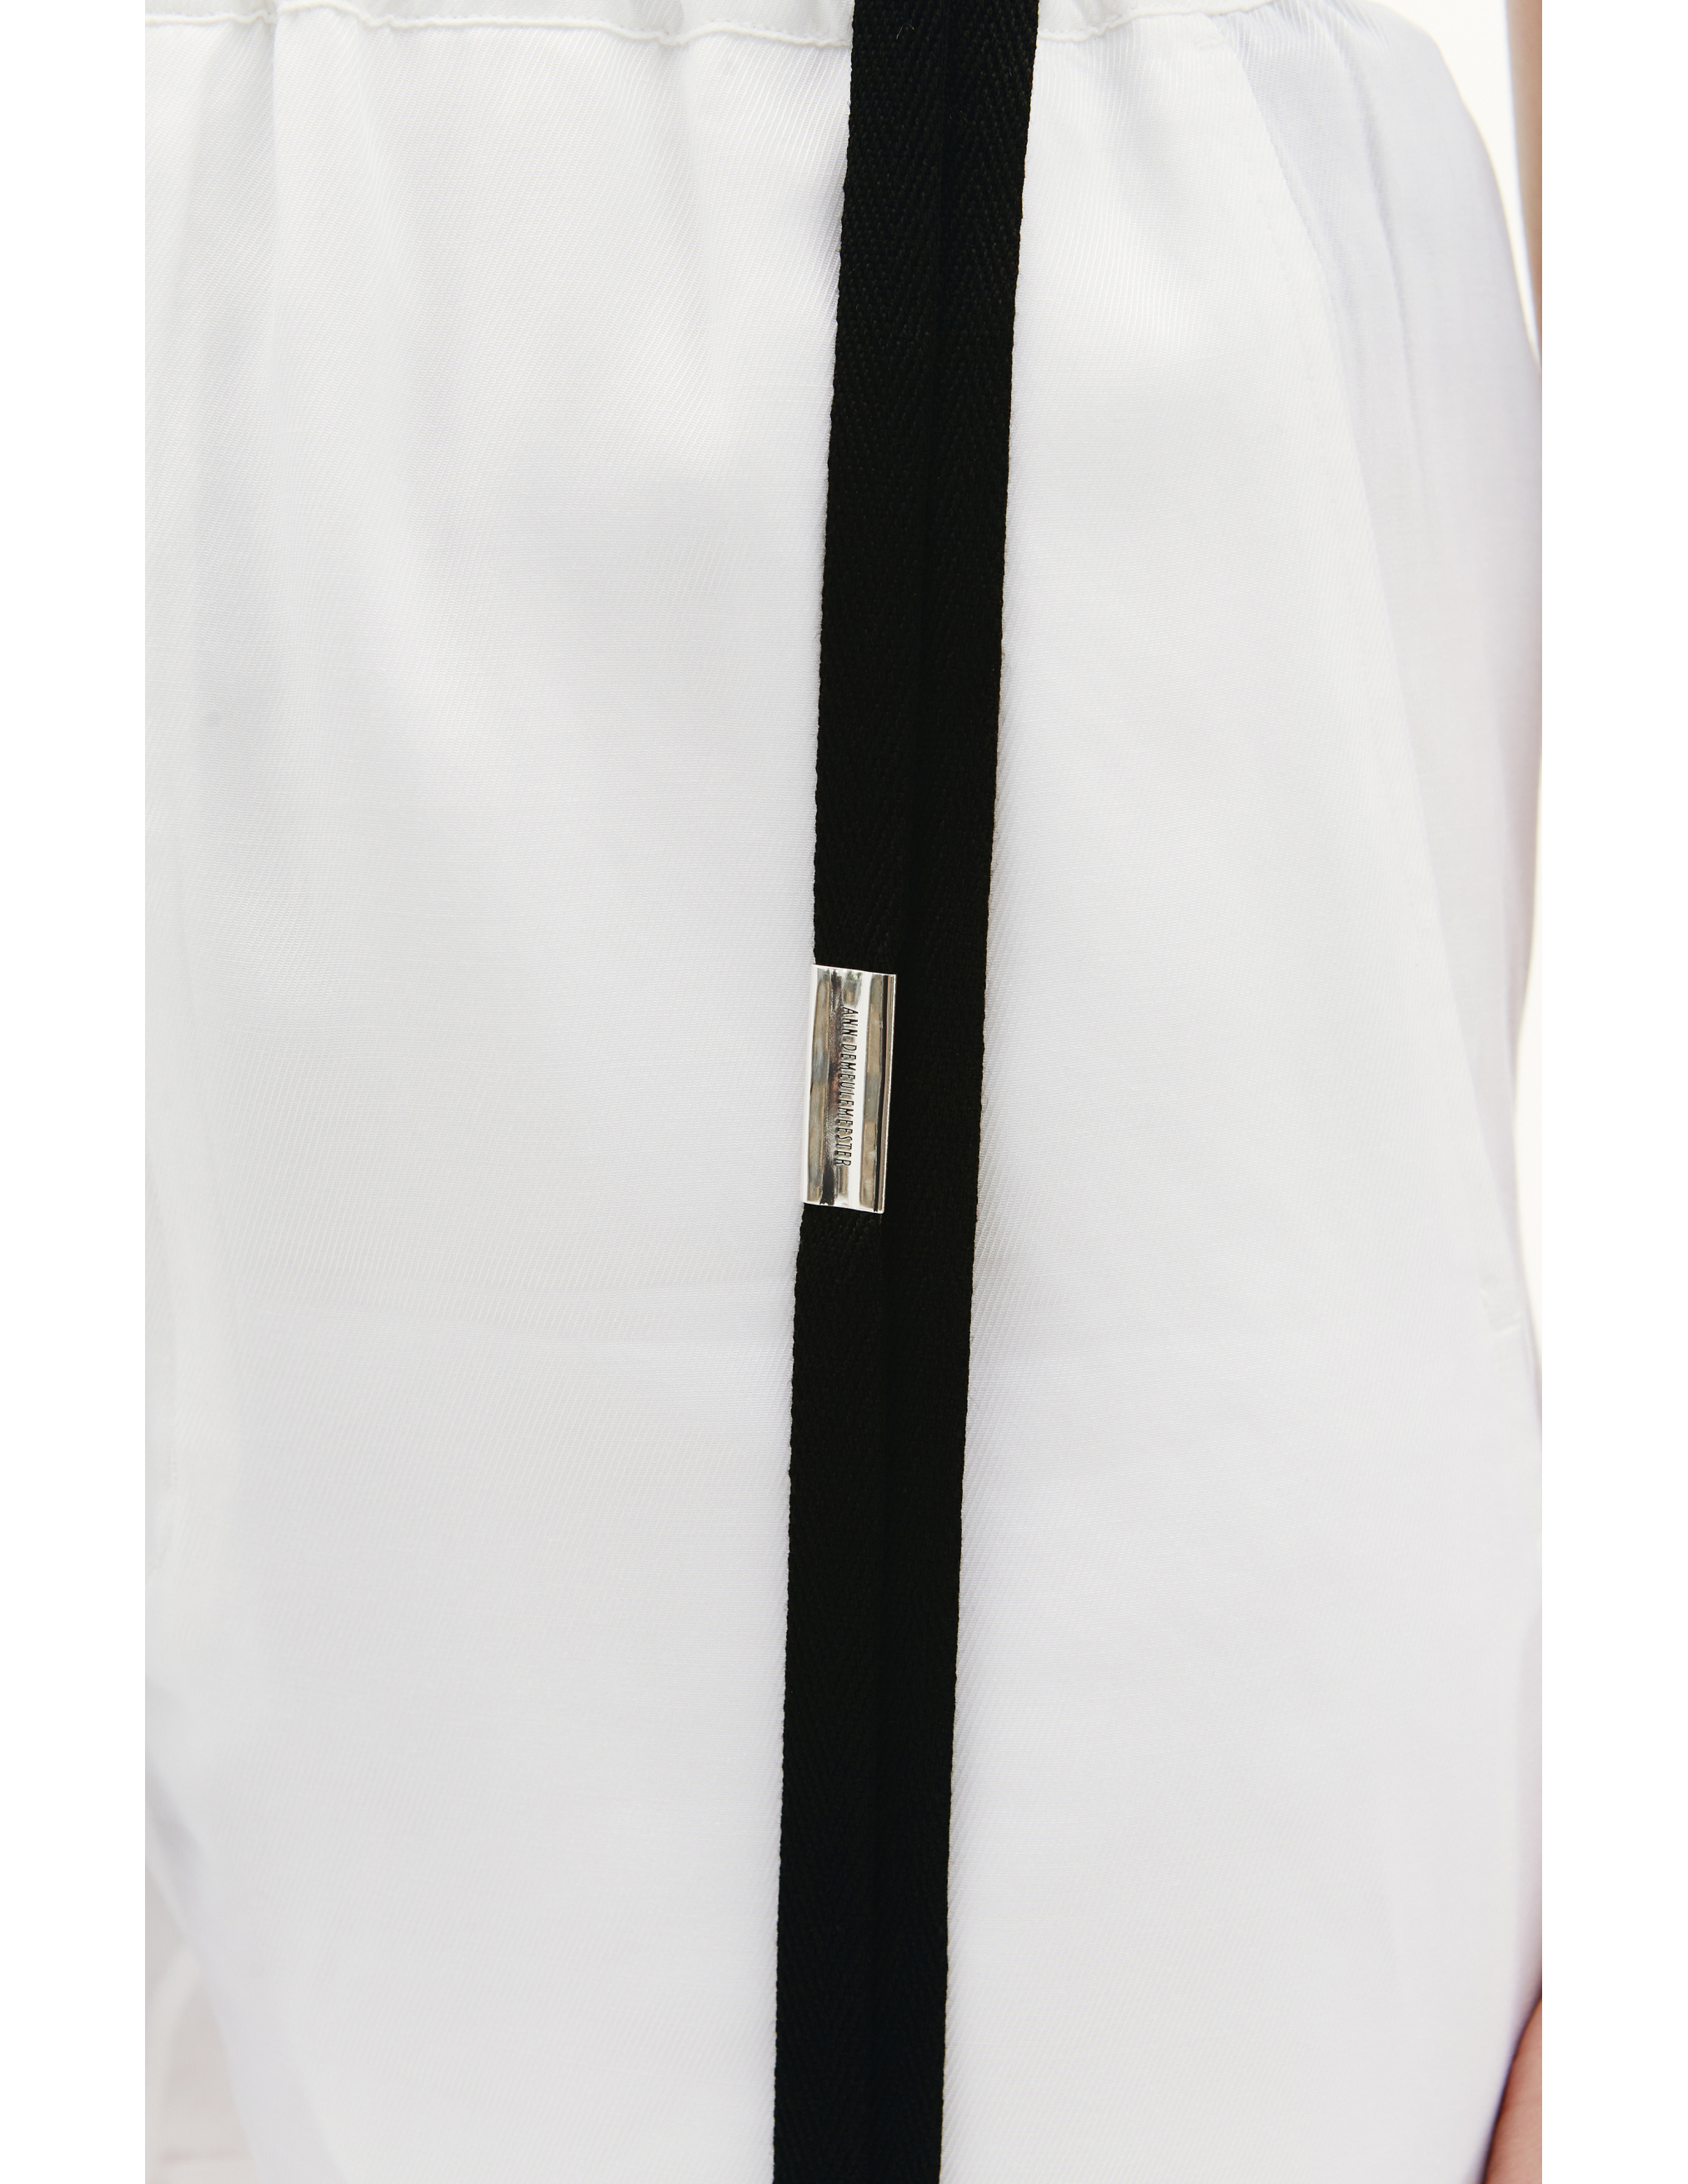 Белые шорты Angela с контрастными лентами Ann Demeulemeester 2201-W-TR52-135-001, размер 36;38 - фото 4